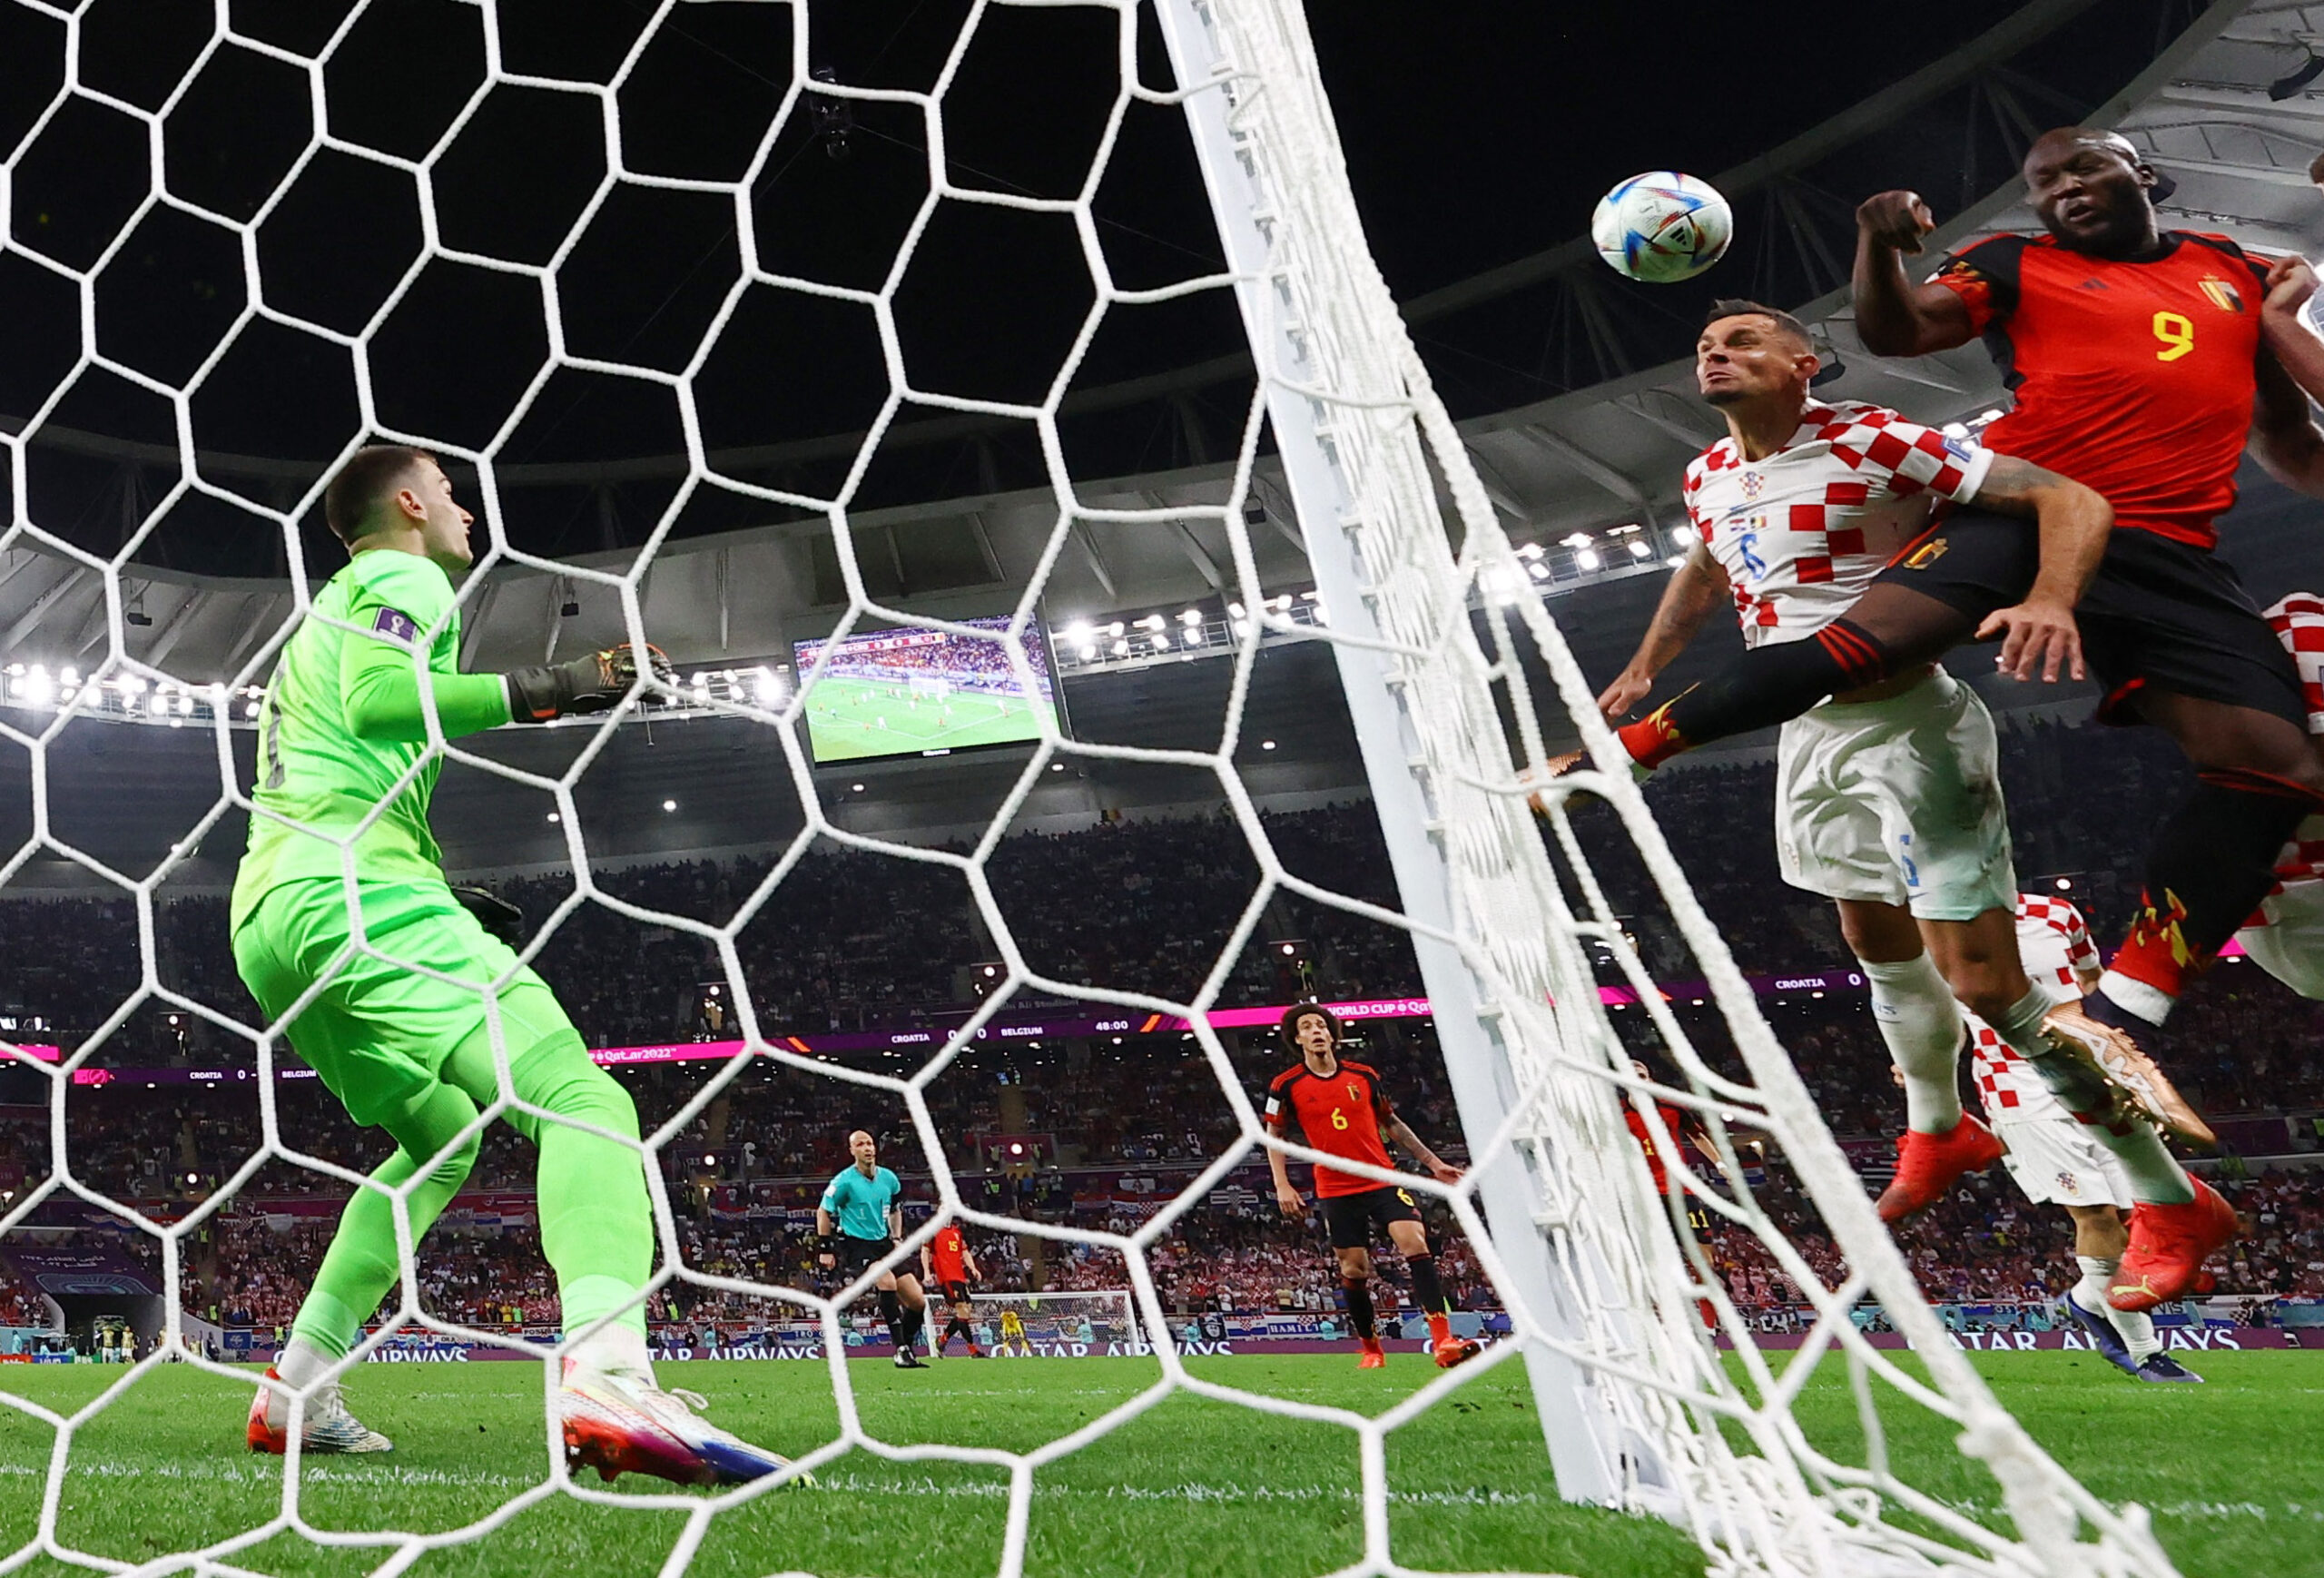 Croatia-Bỉ sẽ quyết định người chiến thắng sẽ được lọt vào vòng 1/8 World Cup